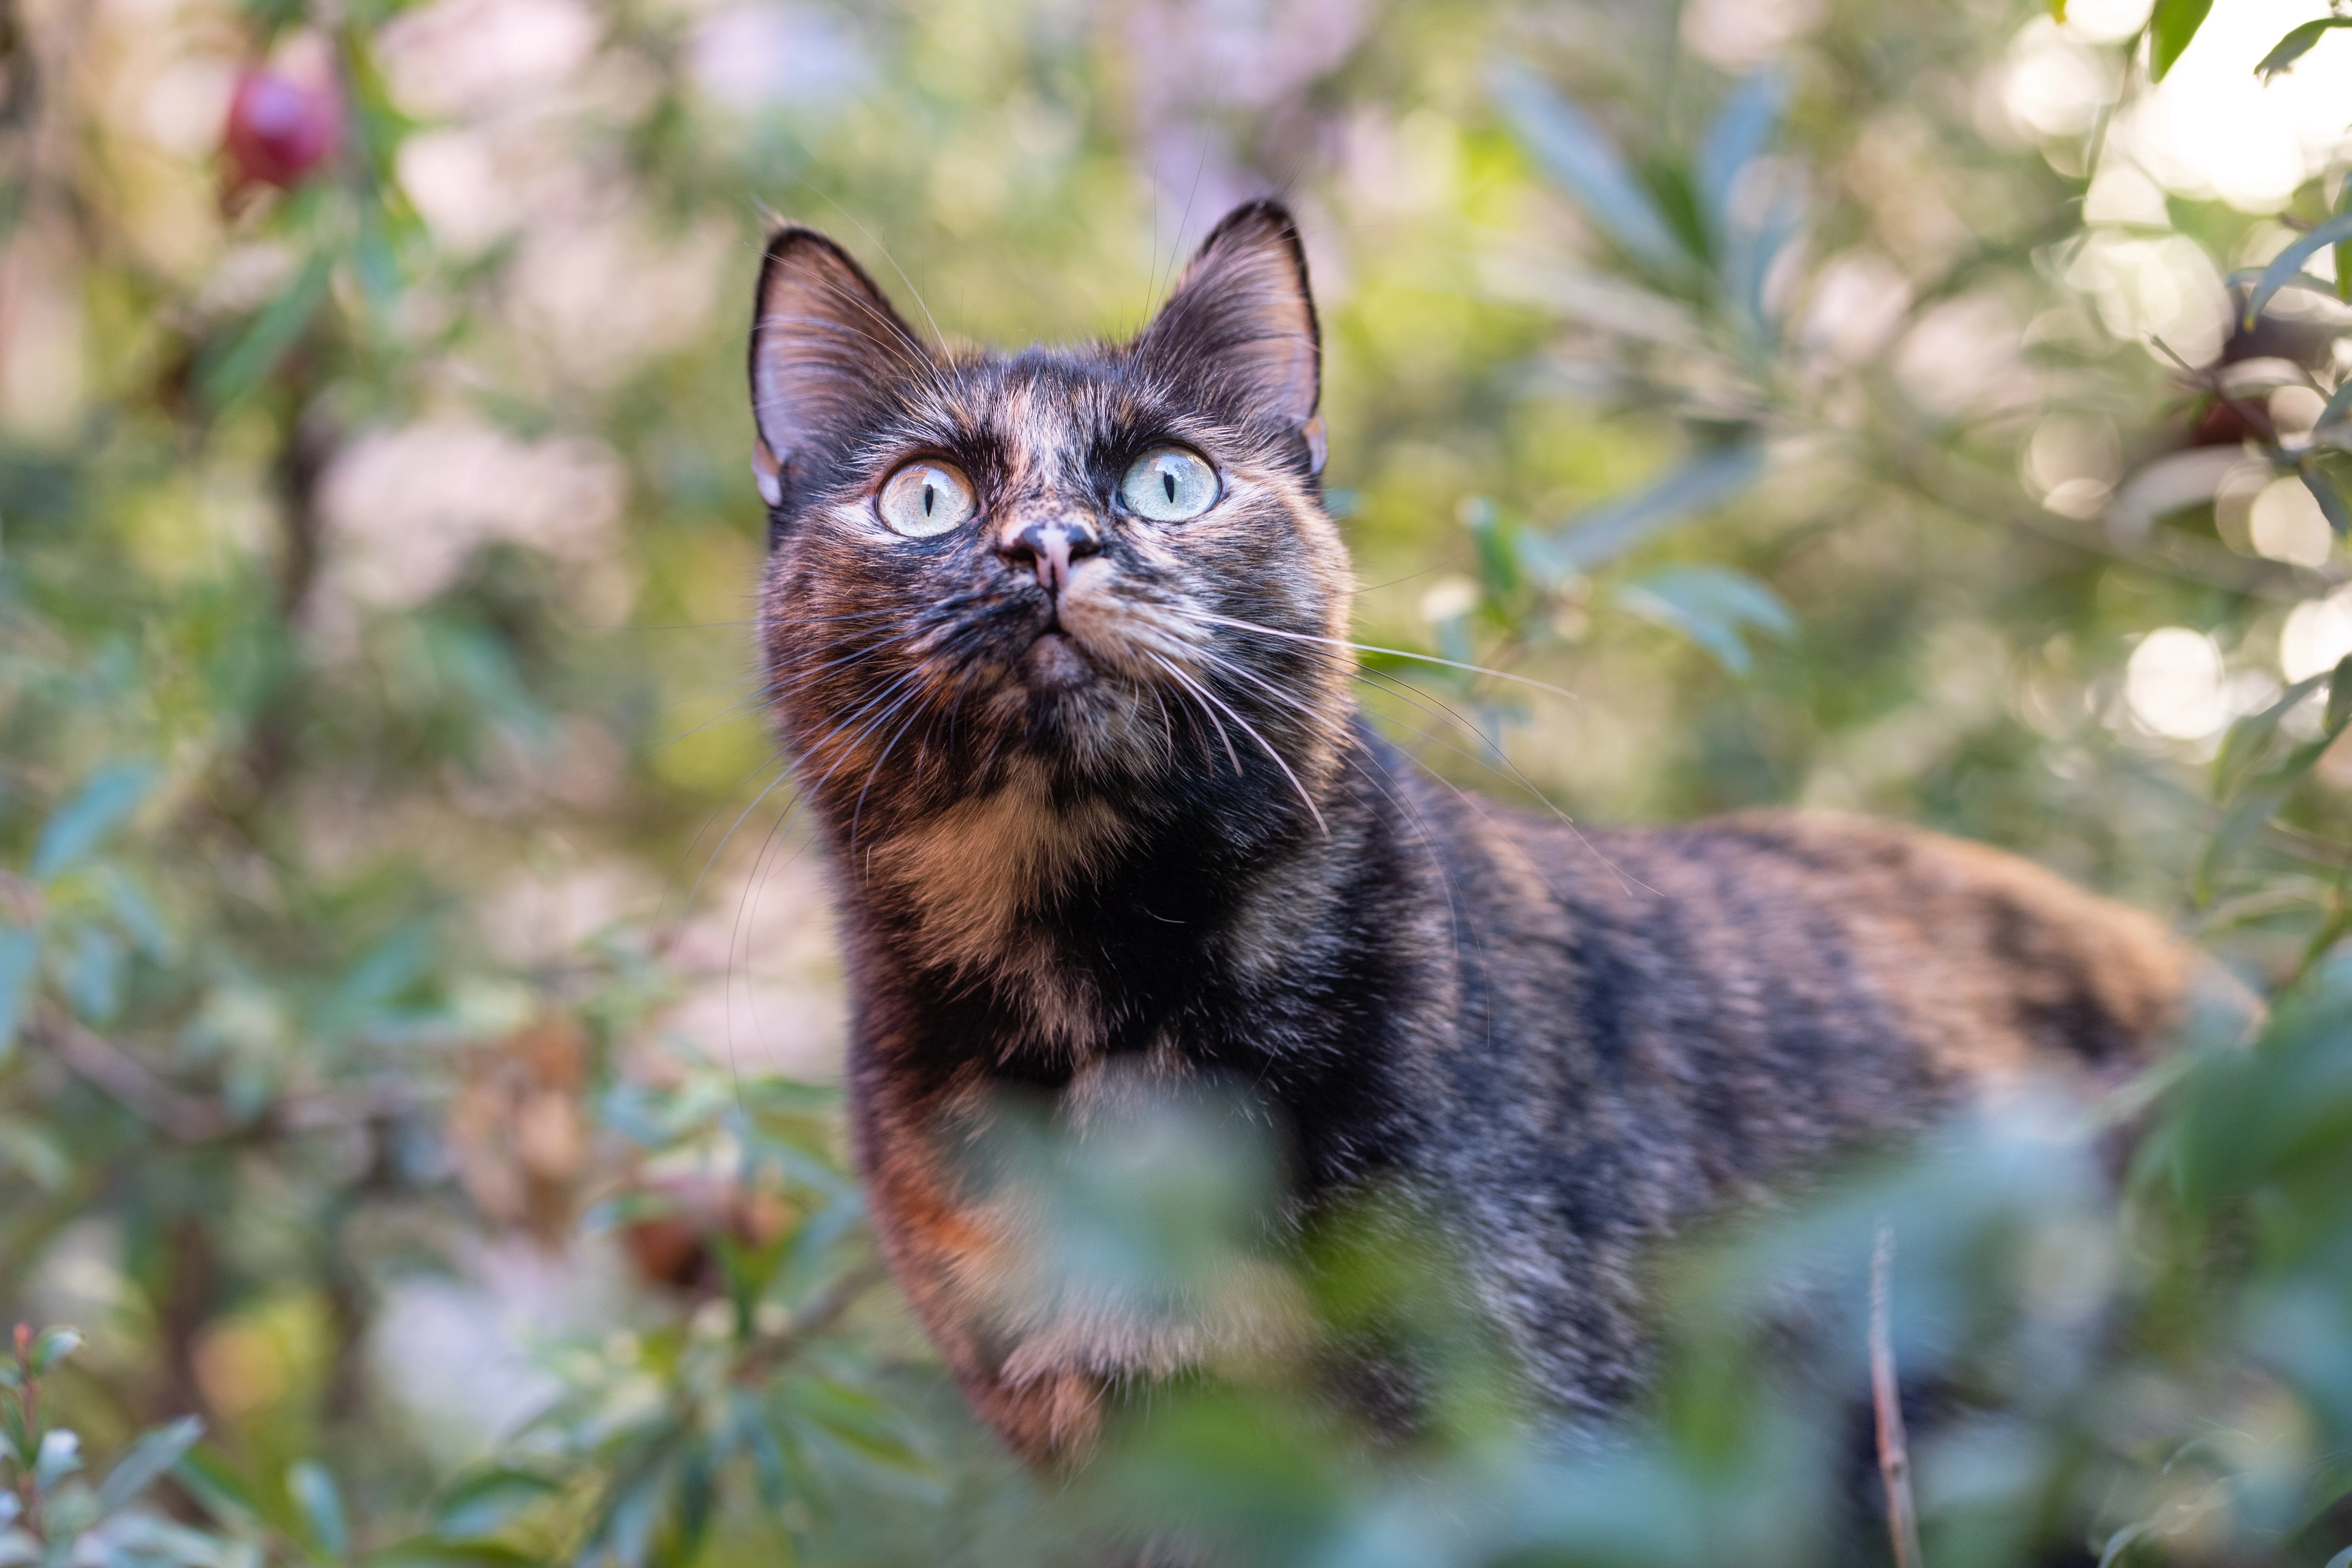 cat looking focused in garden